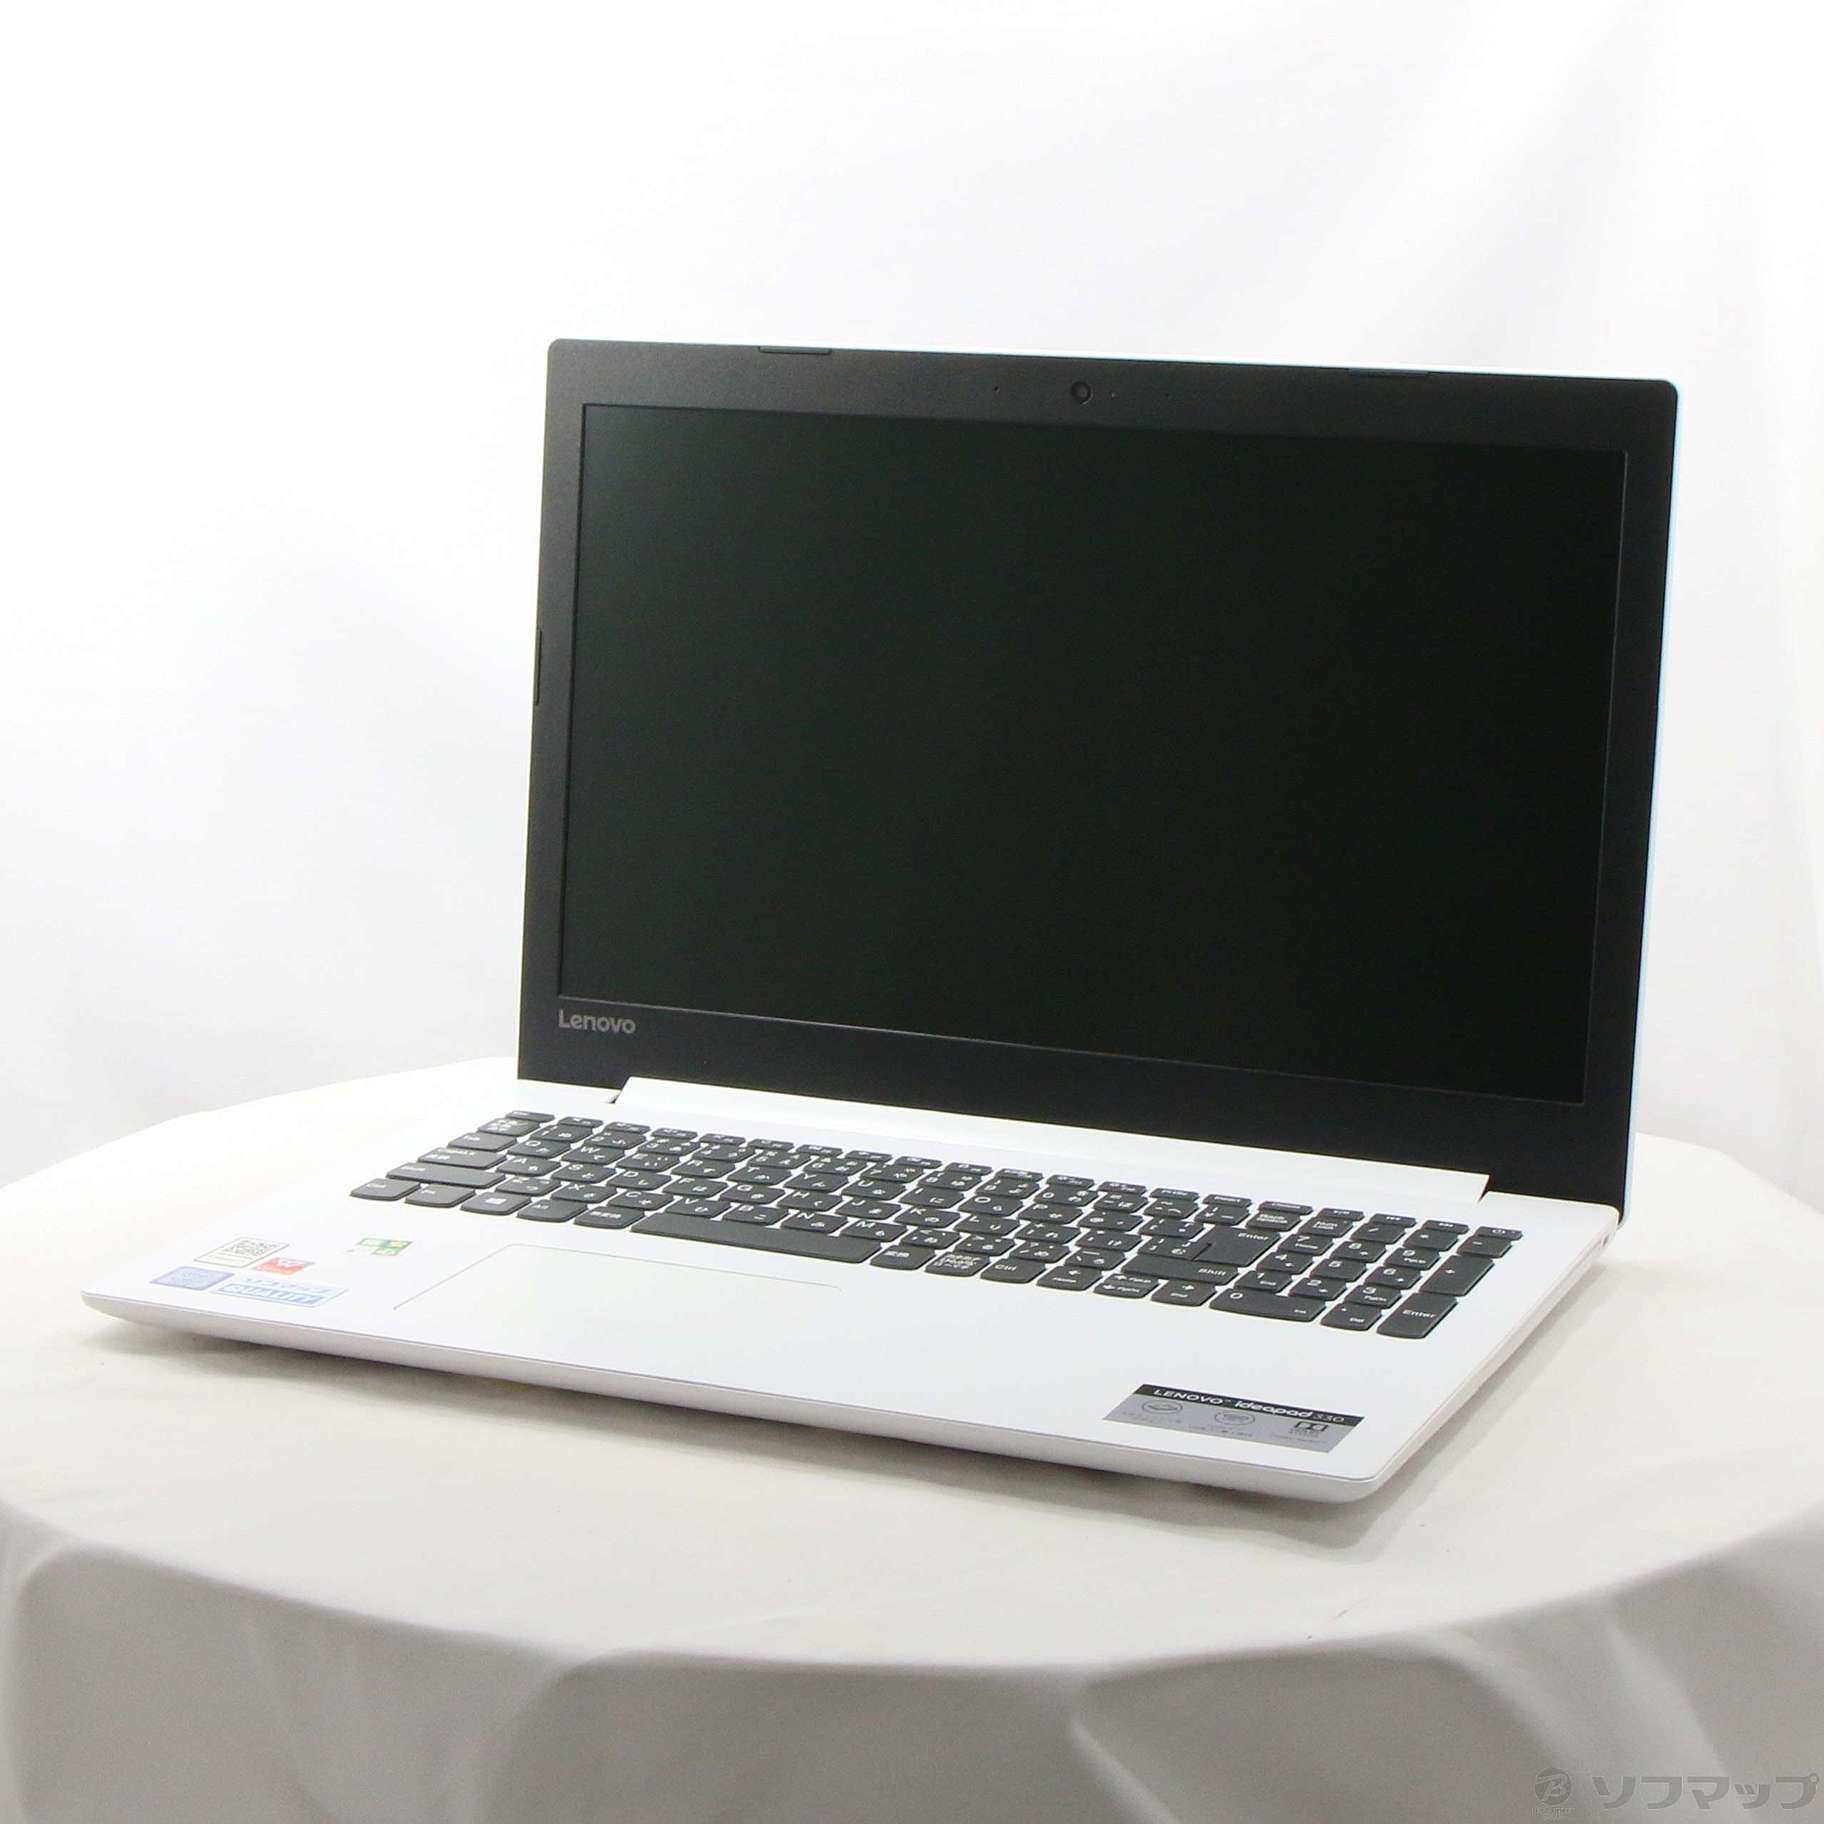 (中古)Lenovo 格安安心パソコン ideapad 330 81DE02PMJP ブリザードホワイト (Windows 10)(258-ud)